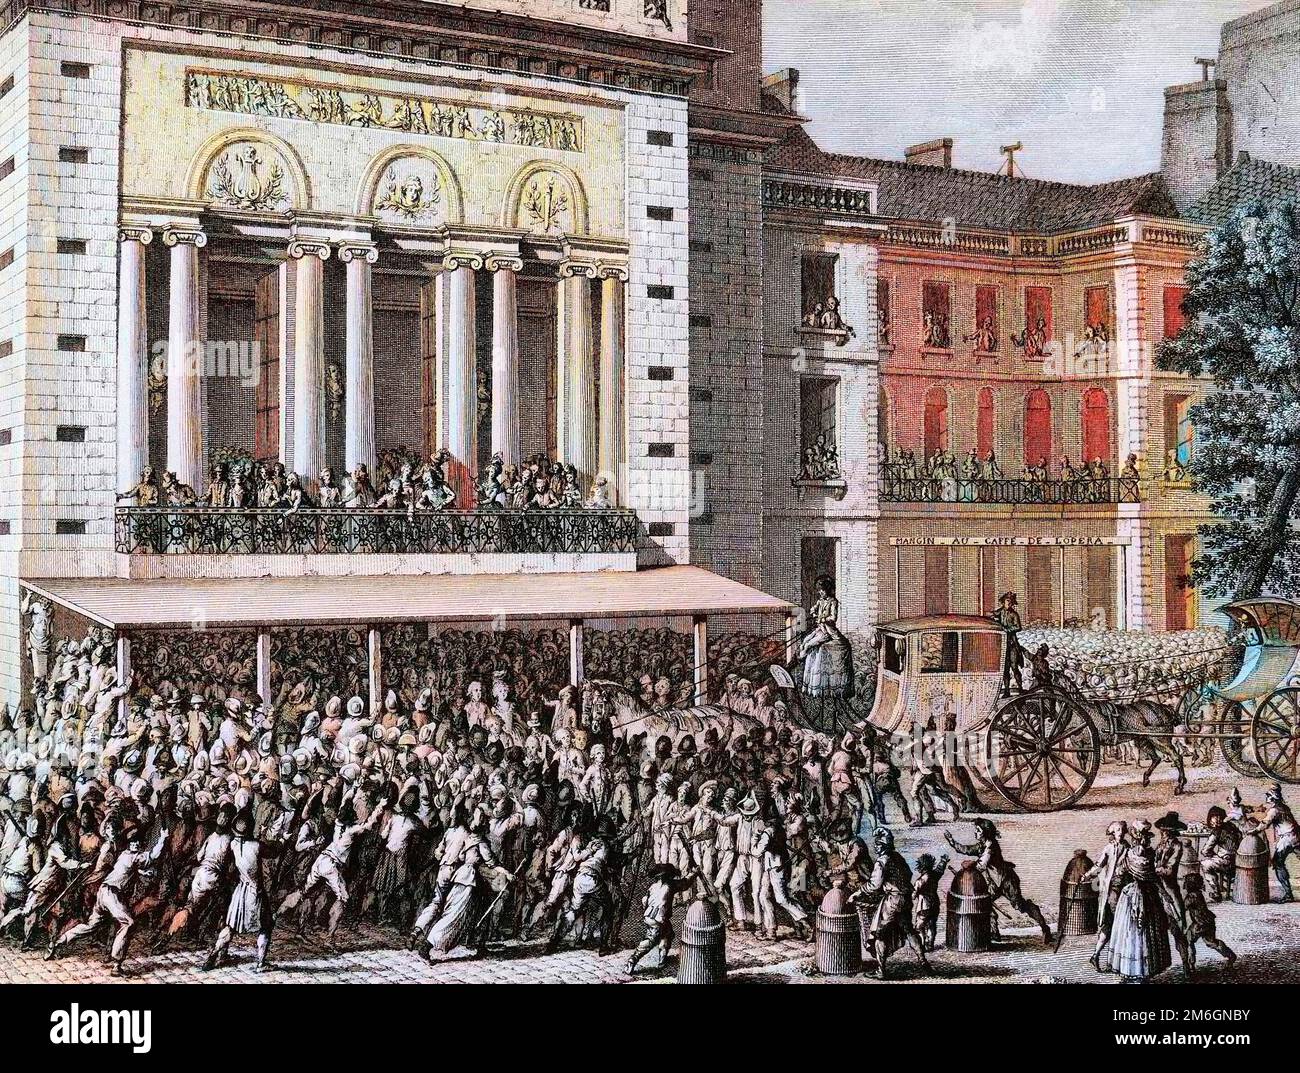 Revolution francaise de 1789 - French Revolution:  Le peuple revolutionnaire faisant fermer l'Opera de Paris le 12 juillet 1789. Dessin de Prieur. Stock Photo